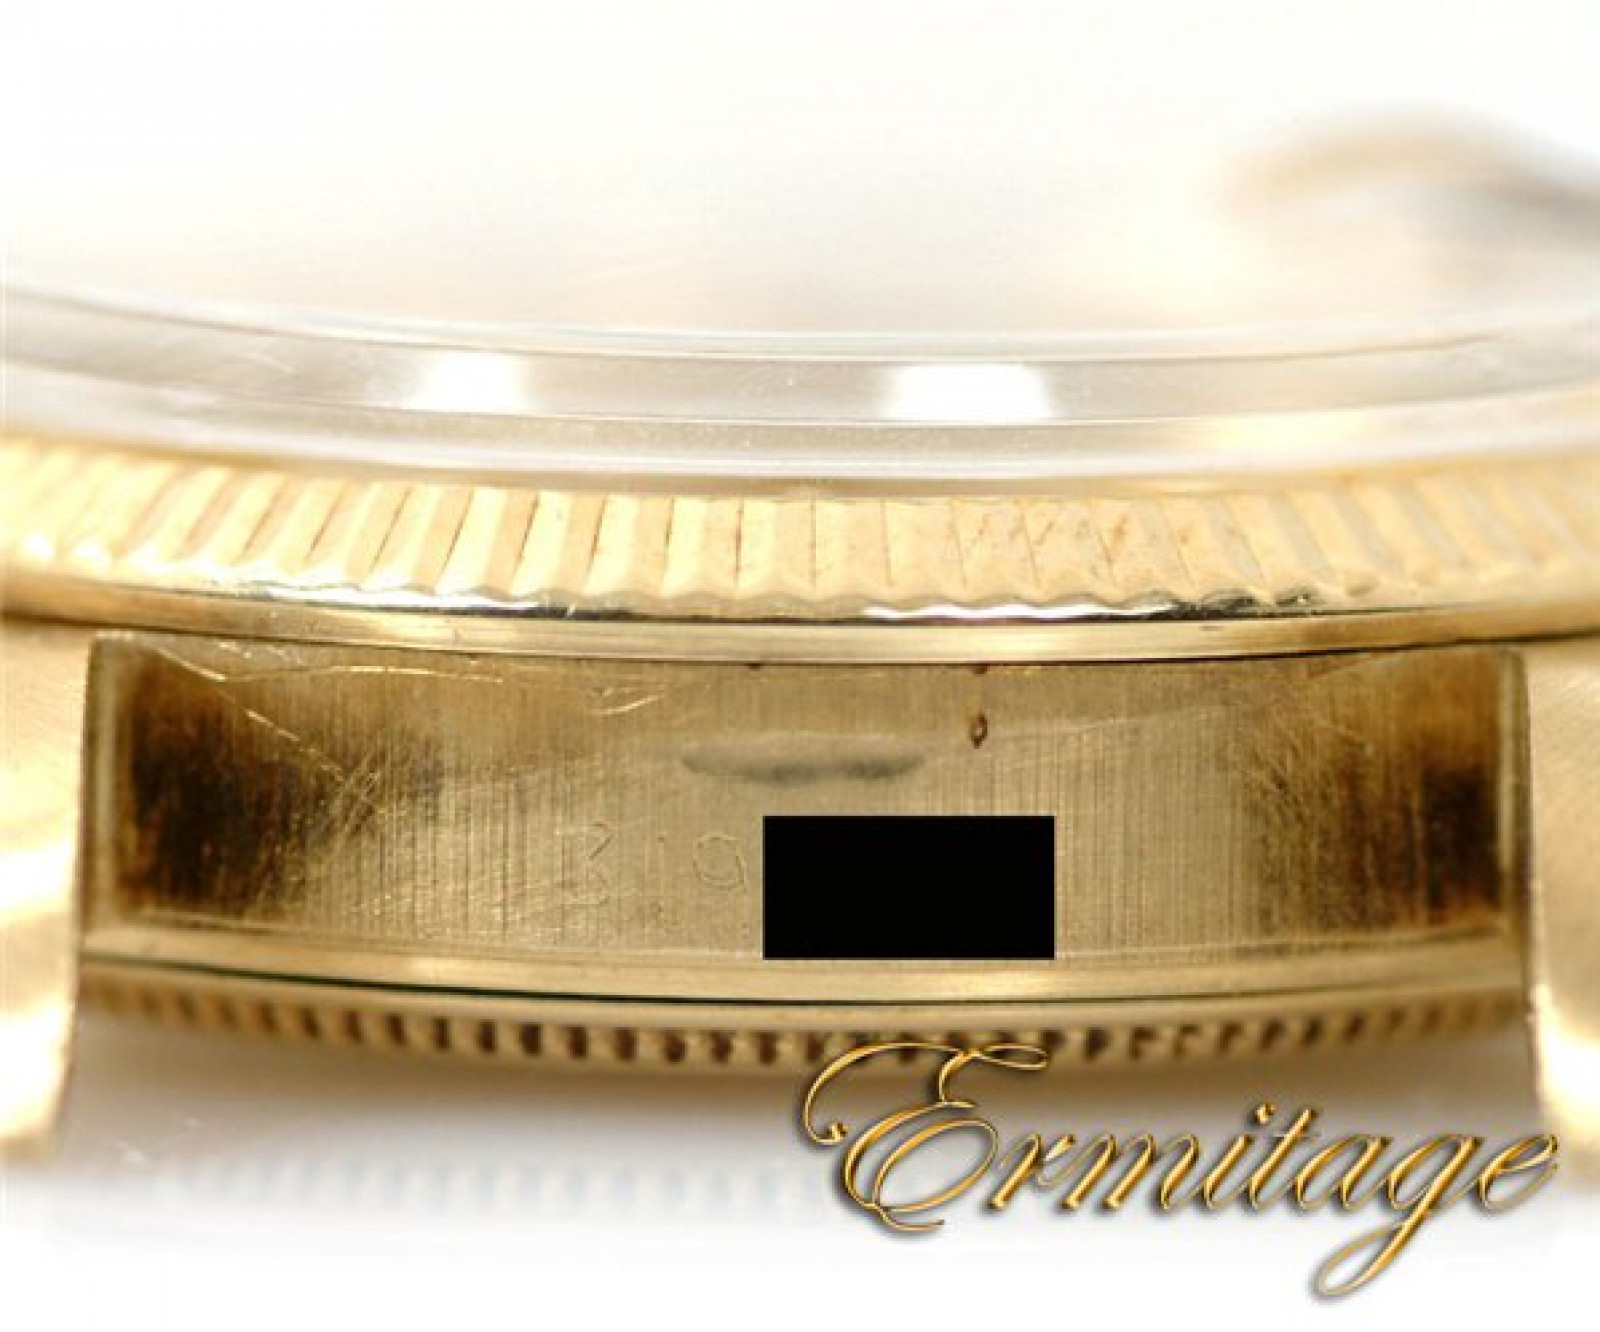 Vintage Rolex Date 1503 Gold Year Circa 1970